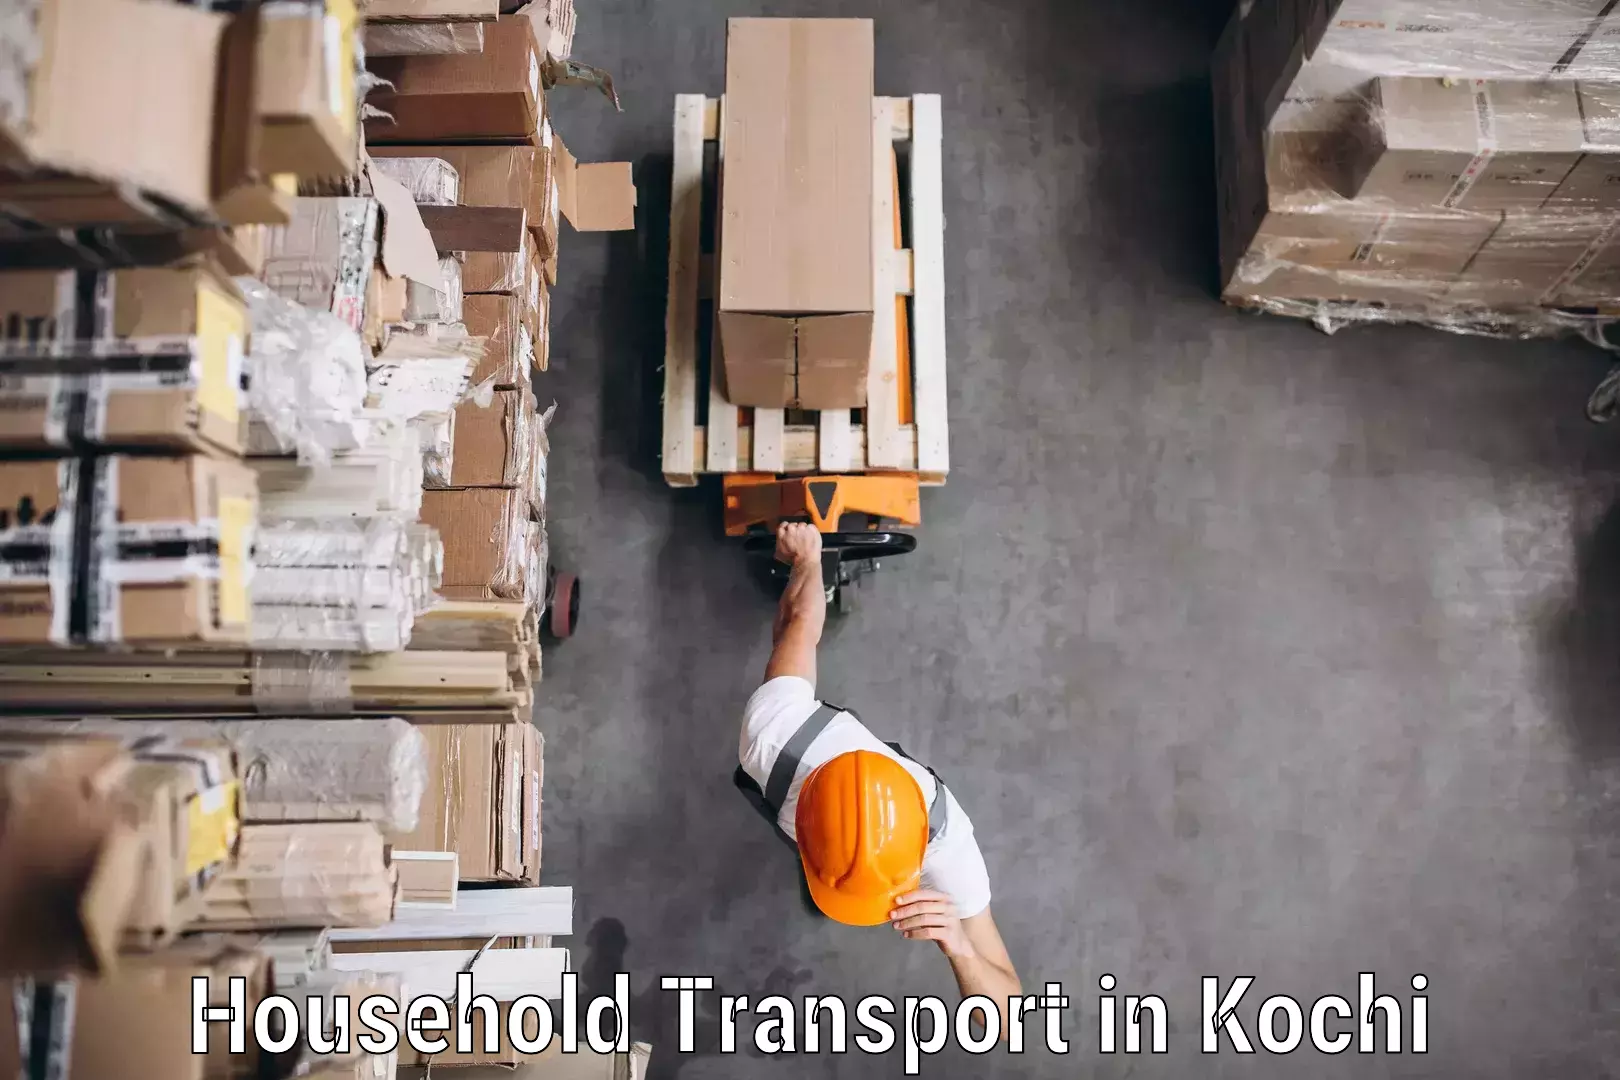 Furniture transport experts in Kochi